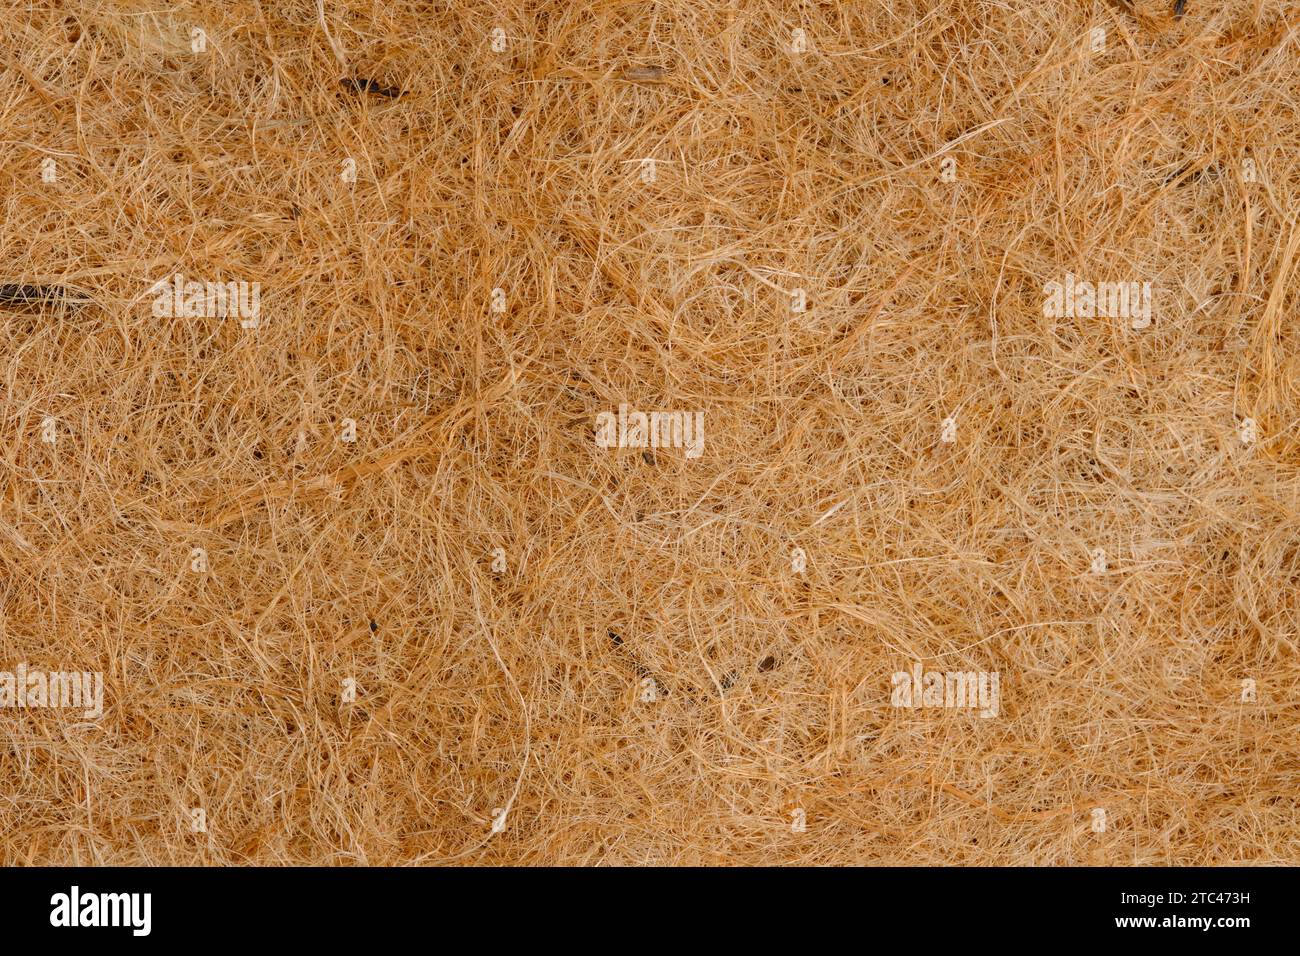 Substrat de fond en fibres organiques Banque D'Images